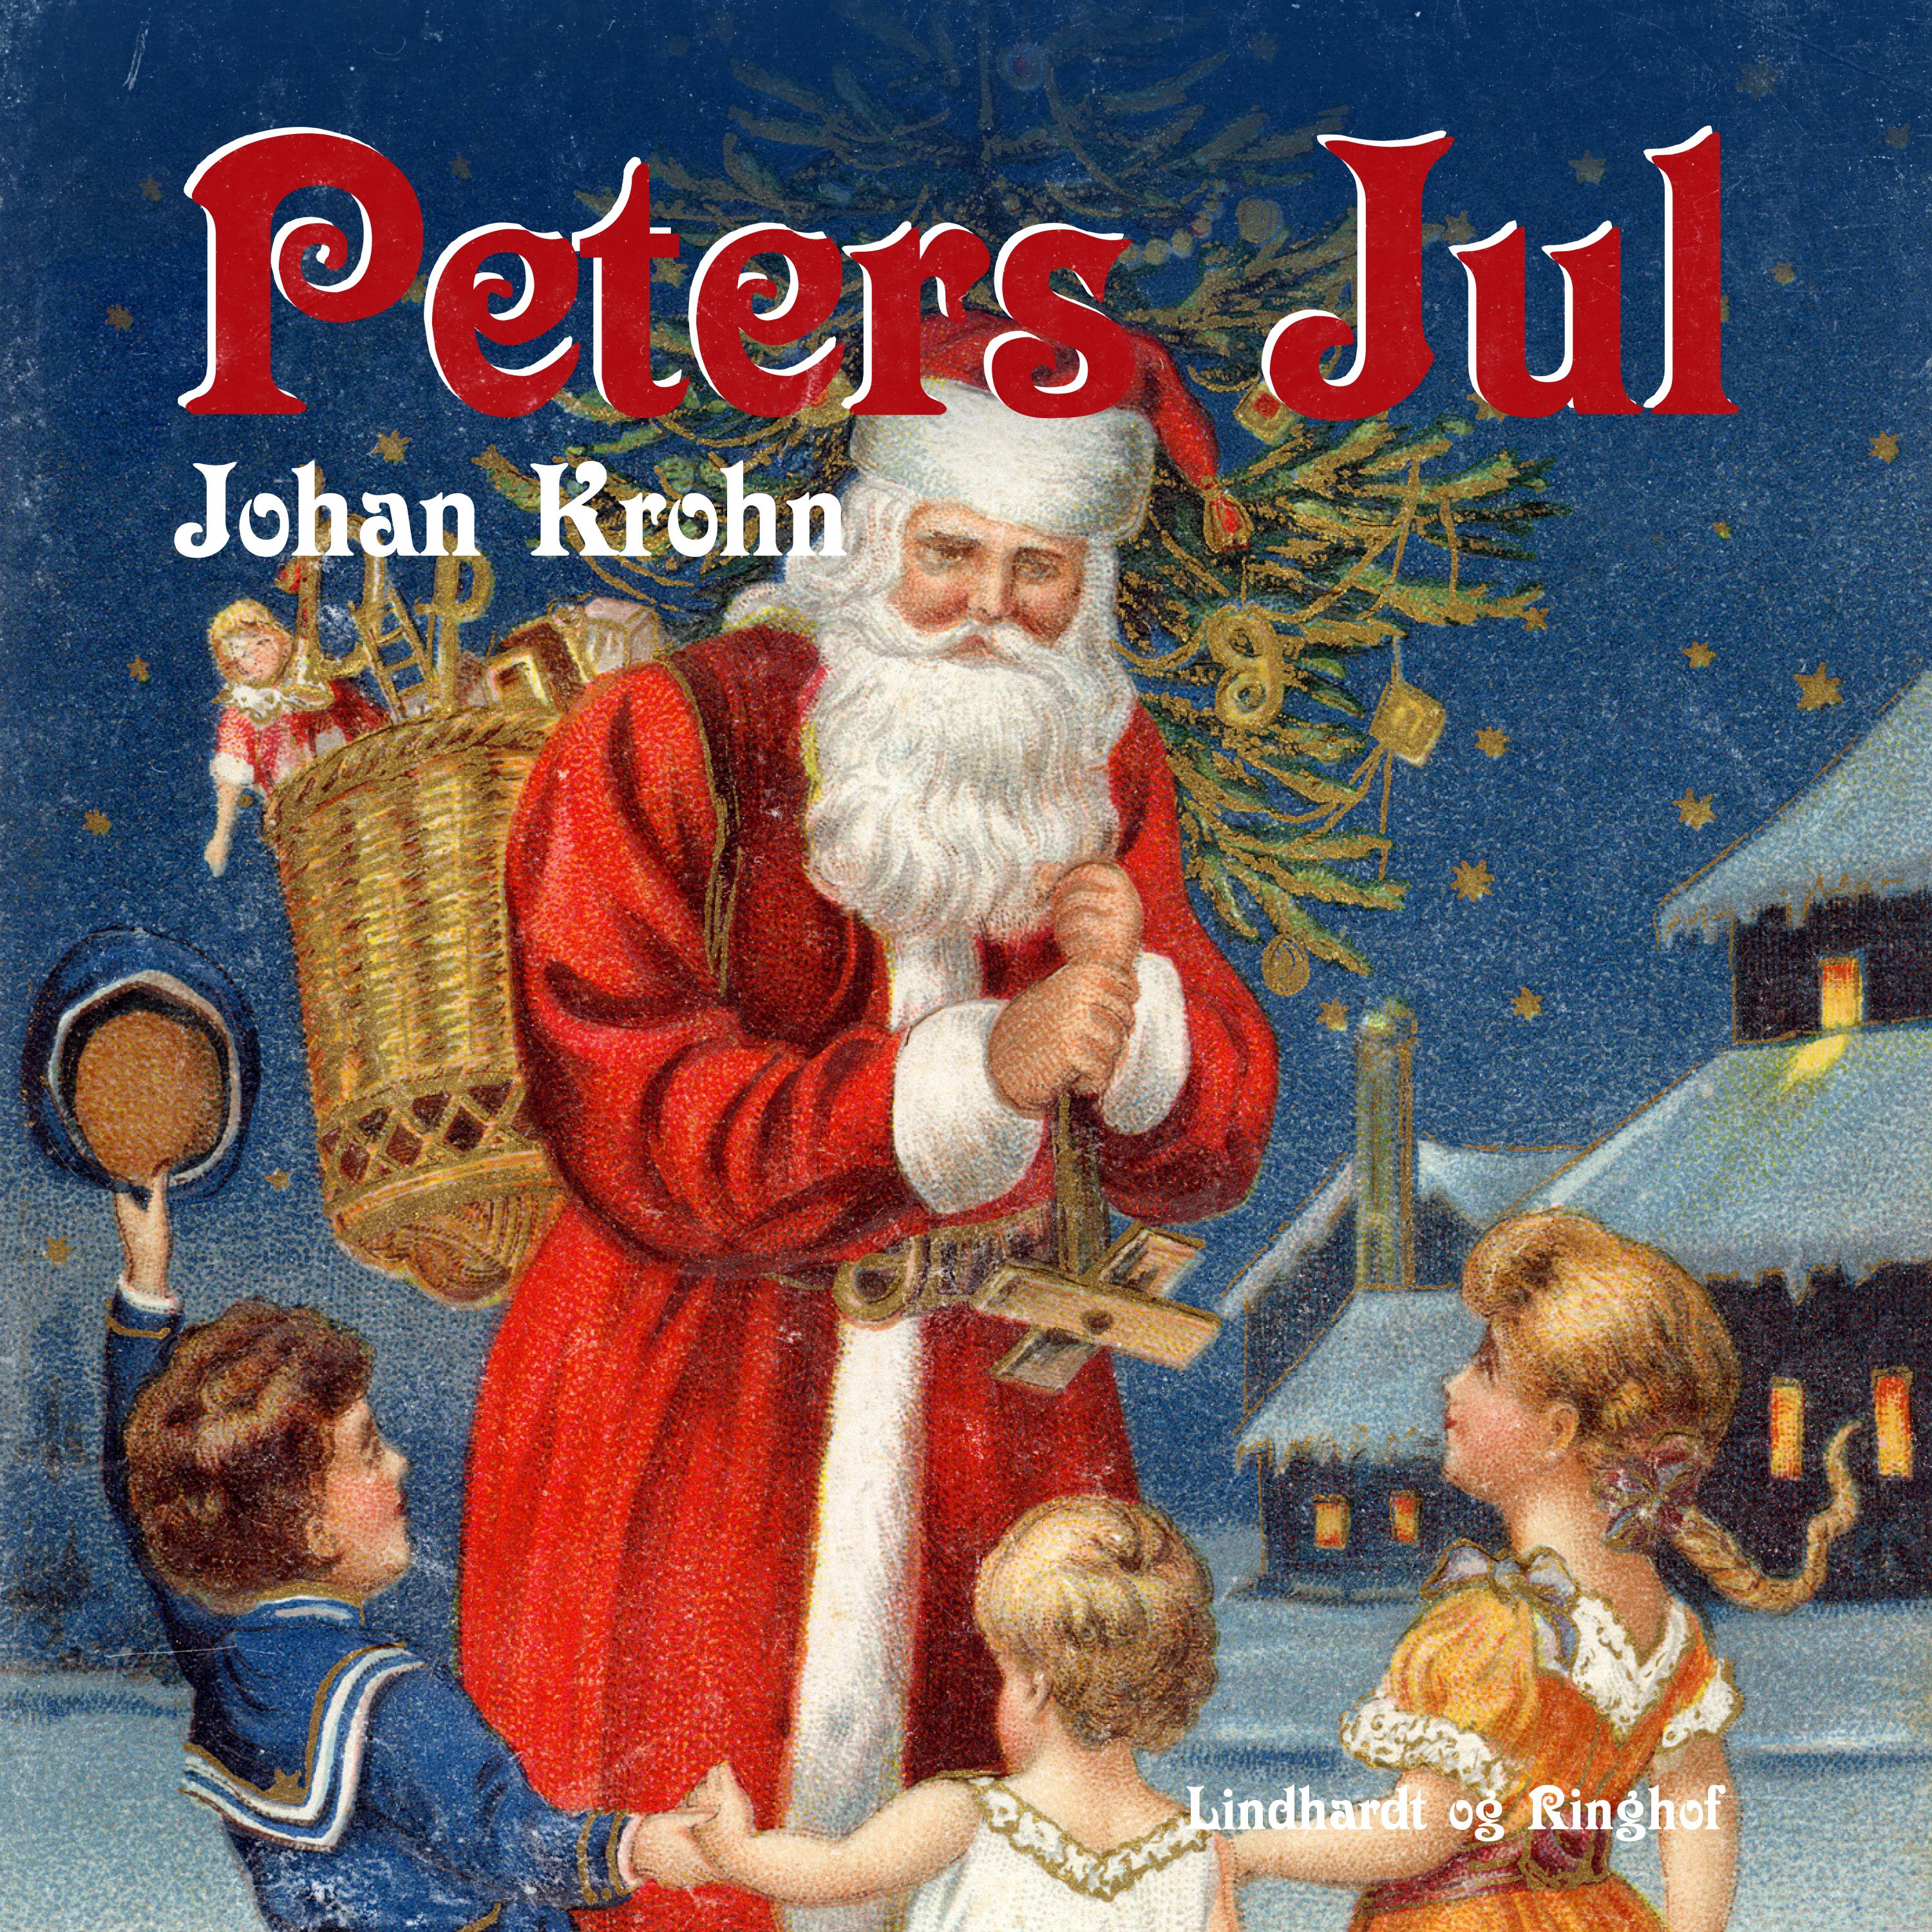 Peters jul, ljudbok av Johan Krohn